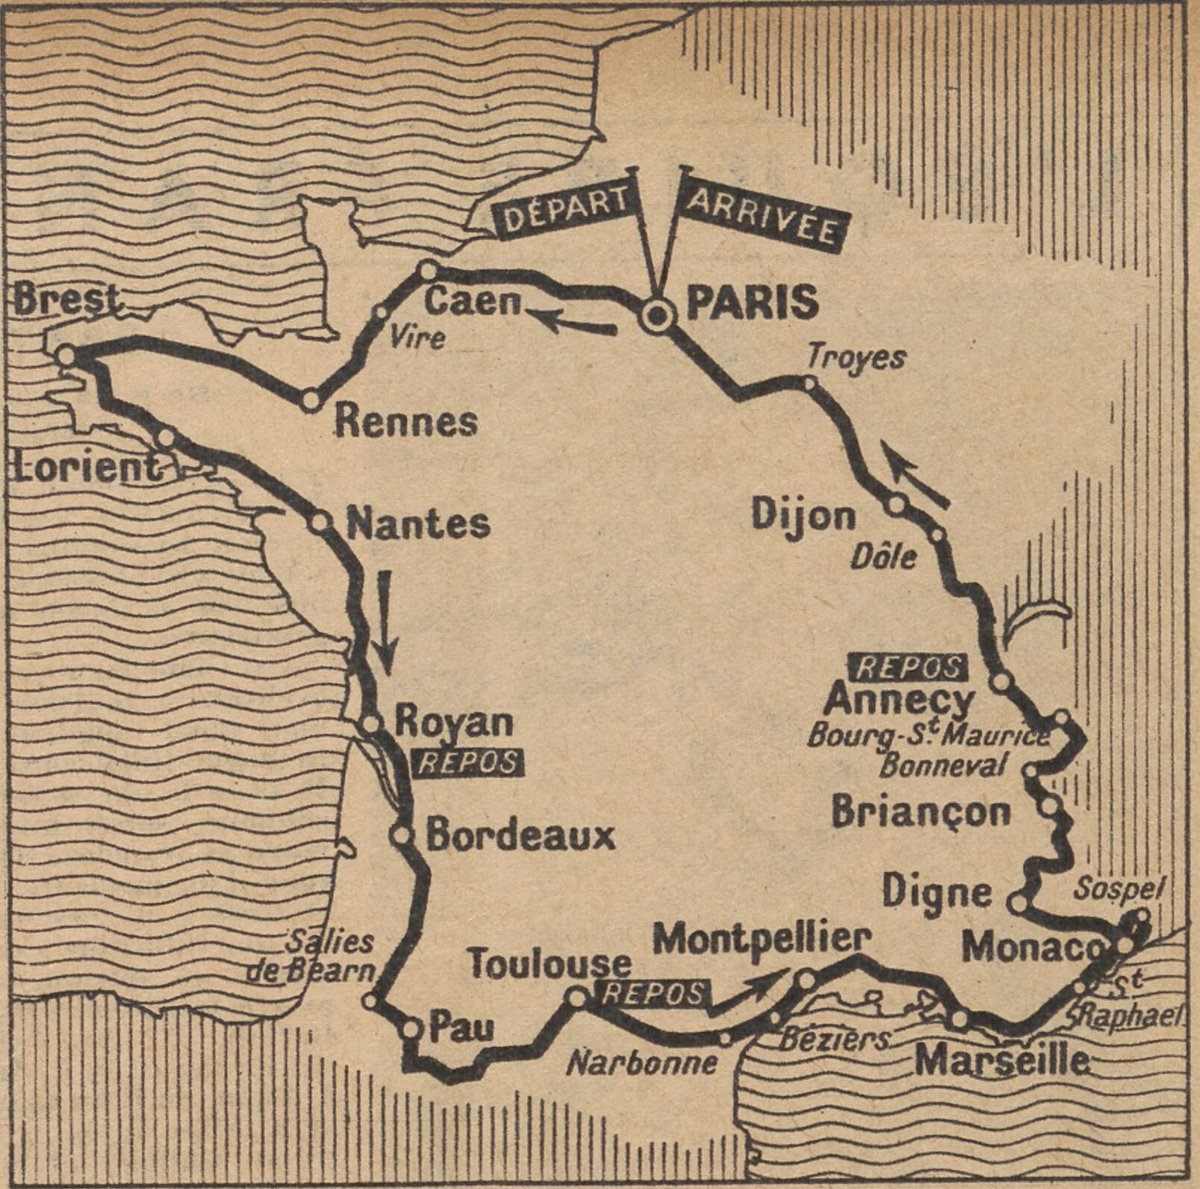 Le Tour de France 1939 était un Tour au rabais selon une partie de la presse contemporaine, puisque n'épousant plus les frontières du pays. 4 224 km, malgré tout, pour ce qui fut la dernière Grande Boucle courue du vivant de son créateur Henri Desgrange...